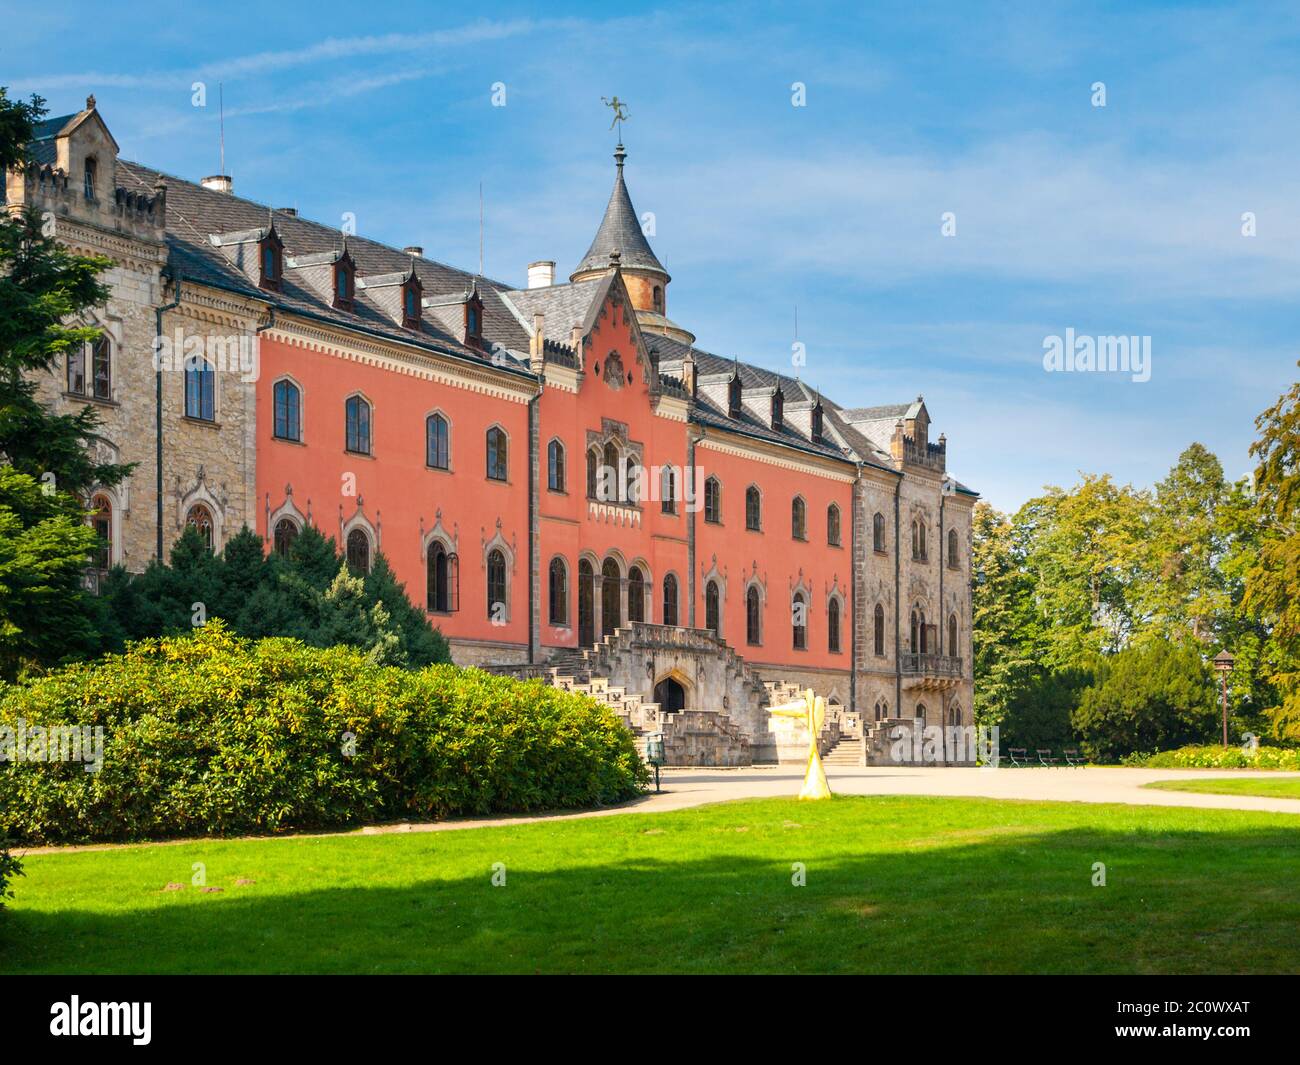 Castello di Sychrov con tipica facciata rosa. Chateau in stile neo-gotico con splendido parco in stile inglese. Bohemian Paradise, Repubblica Ceca Foto Stock